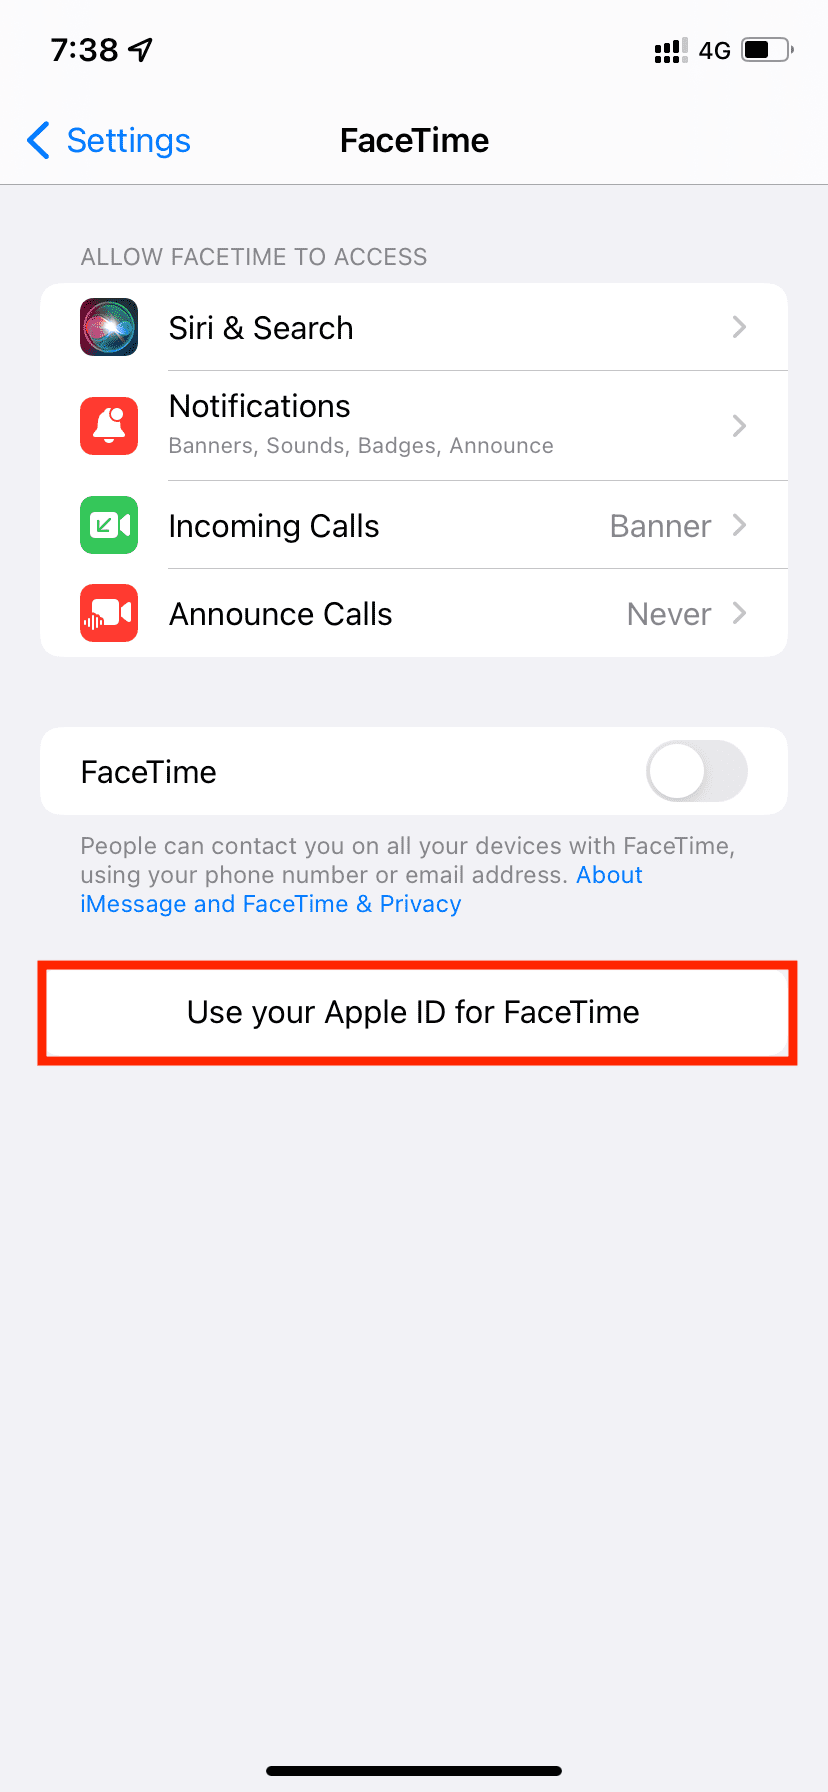 Usa il tuo ID Apple per FaceTime